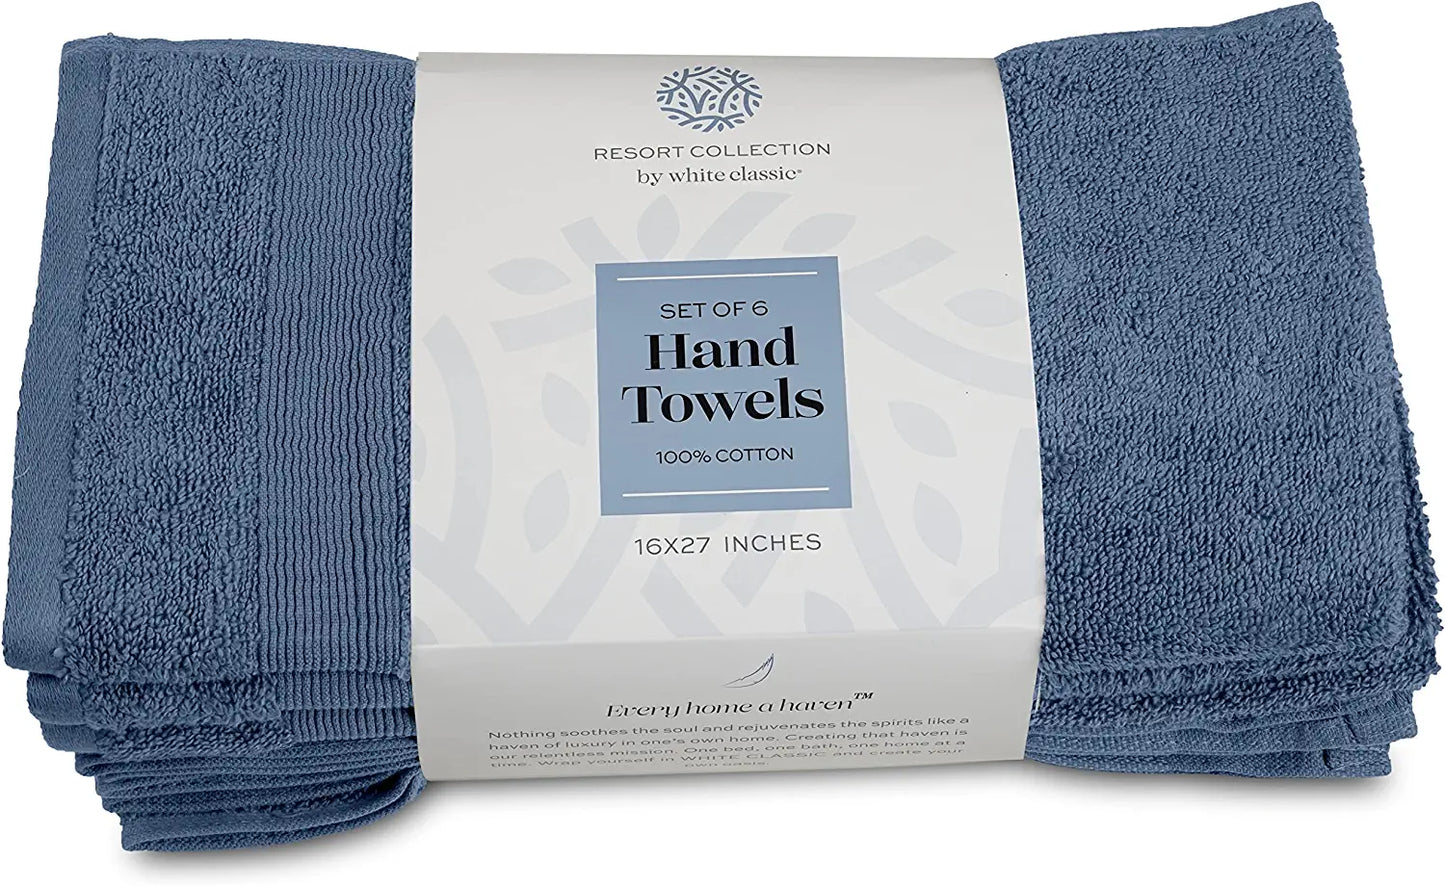 16x27 Blue Hand Towels